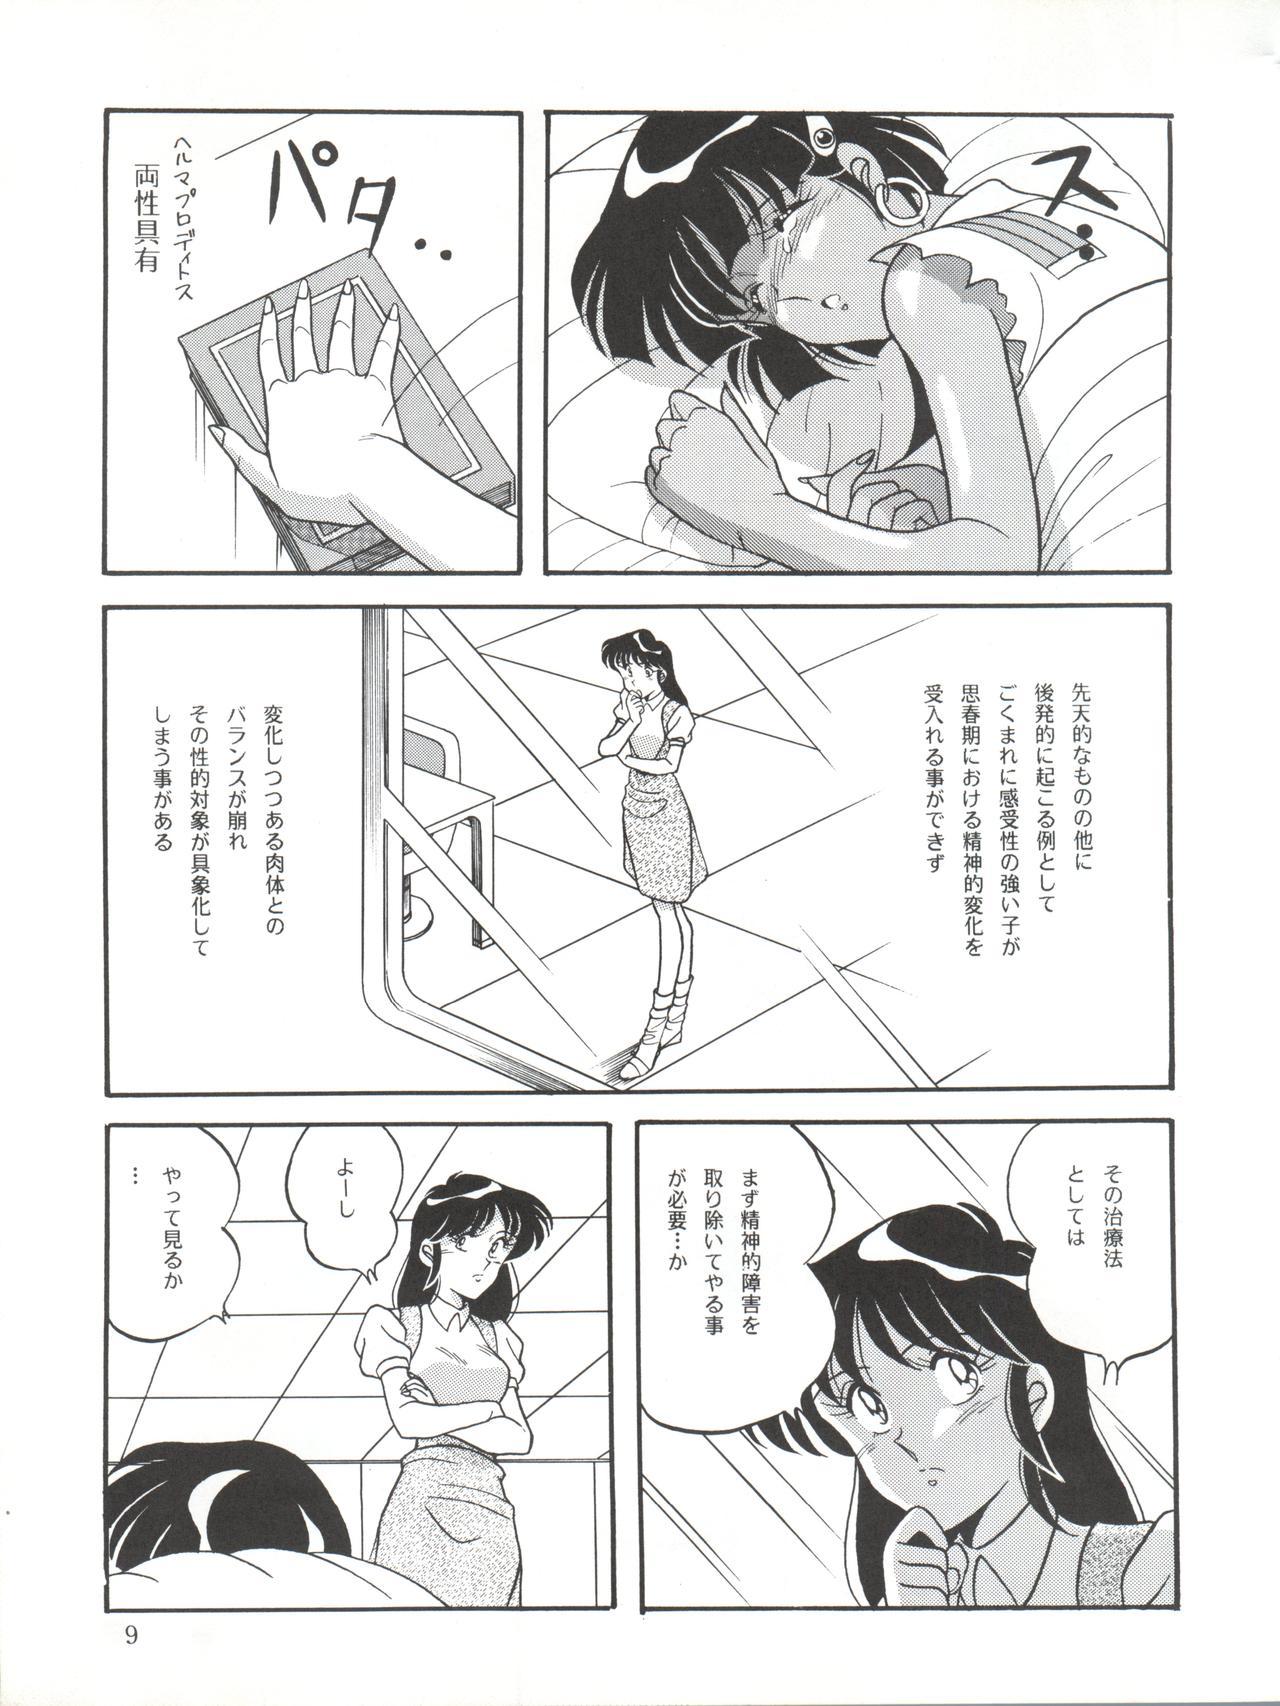 Camshow Vocalization 2 - Fushigi no umi no nadia Stepmother - Page 9